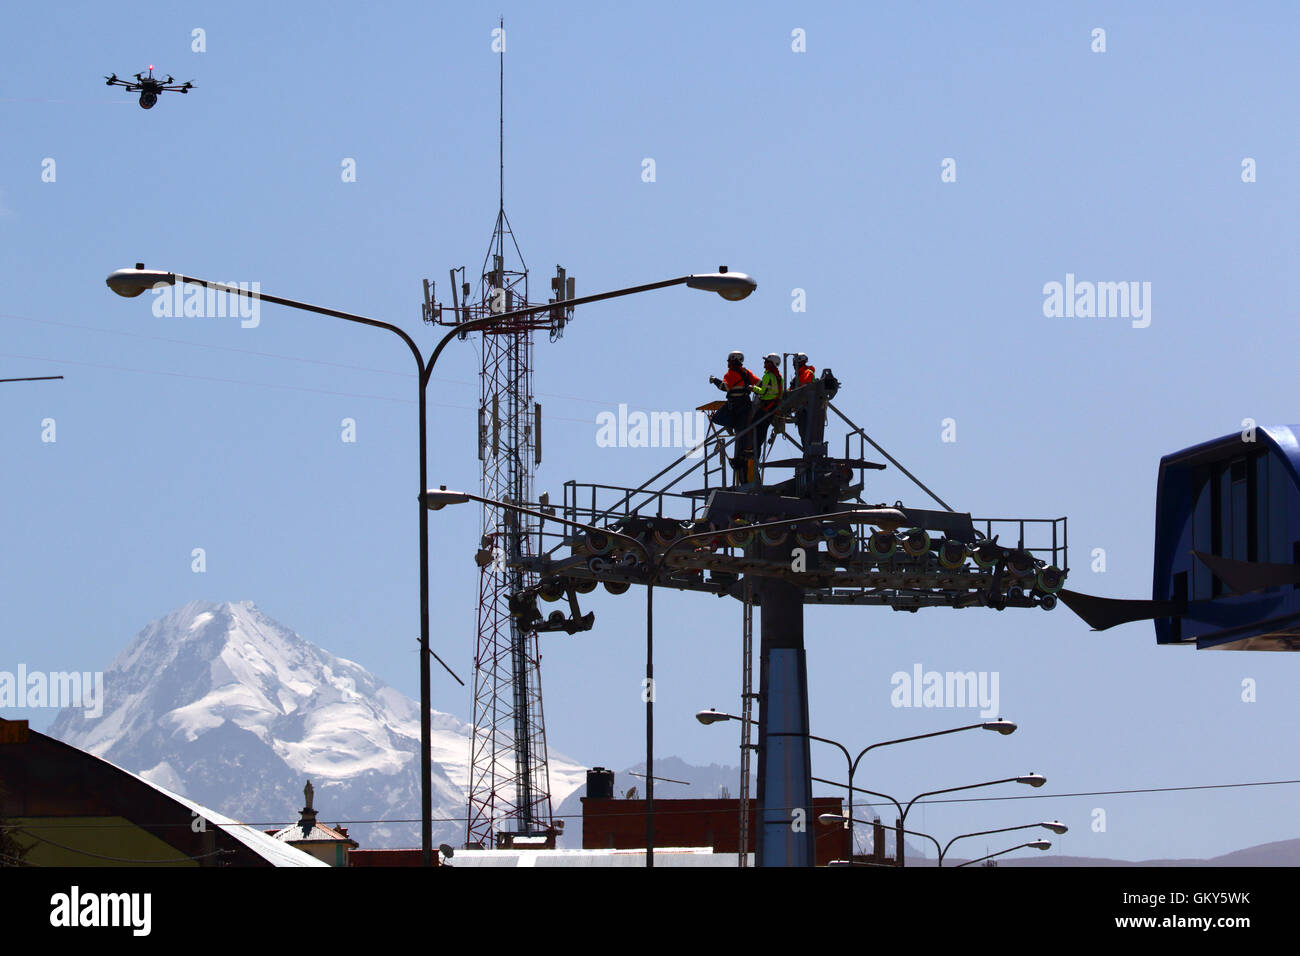 El Alto, Bolivie, 23 août 2016 Des techniciens.attendre un drone qui est porteur d'un câble synthétique léger entre les pylônes d'un nouveau téléphérique / télécabine qui est en construction. C'est la première partie du processus d'installer le dernier câble en acier qui va transporter les gondoles. Ce téléphérique entre Rio Seco et La Ceja à El Alto est l'un d'une deuxième phase de lignes de tramway qui font partie d'un projet ambitieux pour réduire l'encombrement du trafic. 3) à partir de la première phase sont déjà entre les villes de La Paz et El Alto. Mt Huayna Potosi est dans l'arrière-plan. Banque D'Images